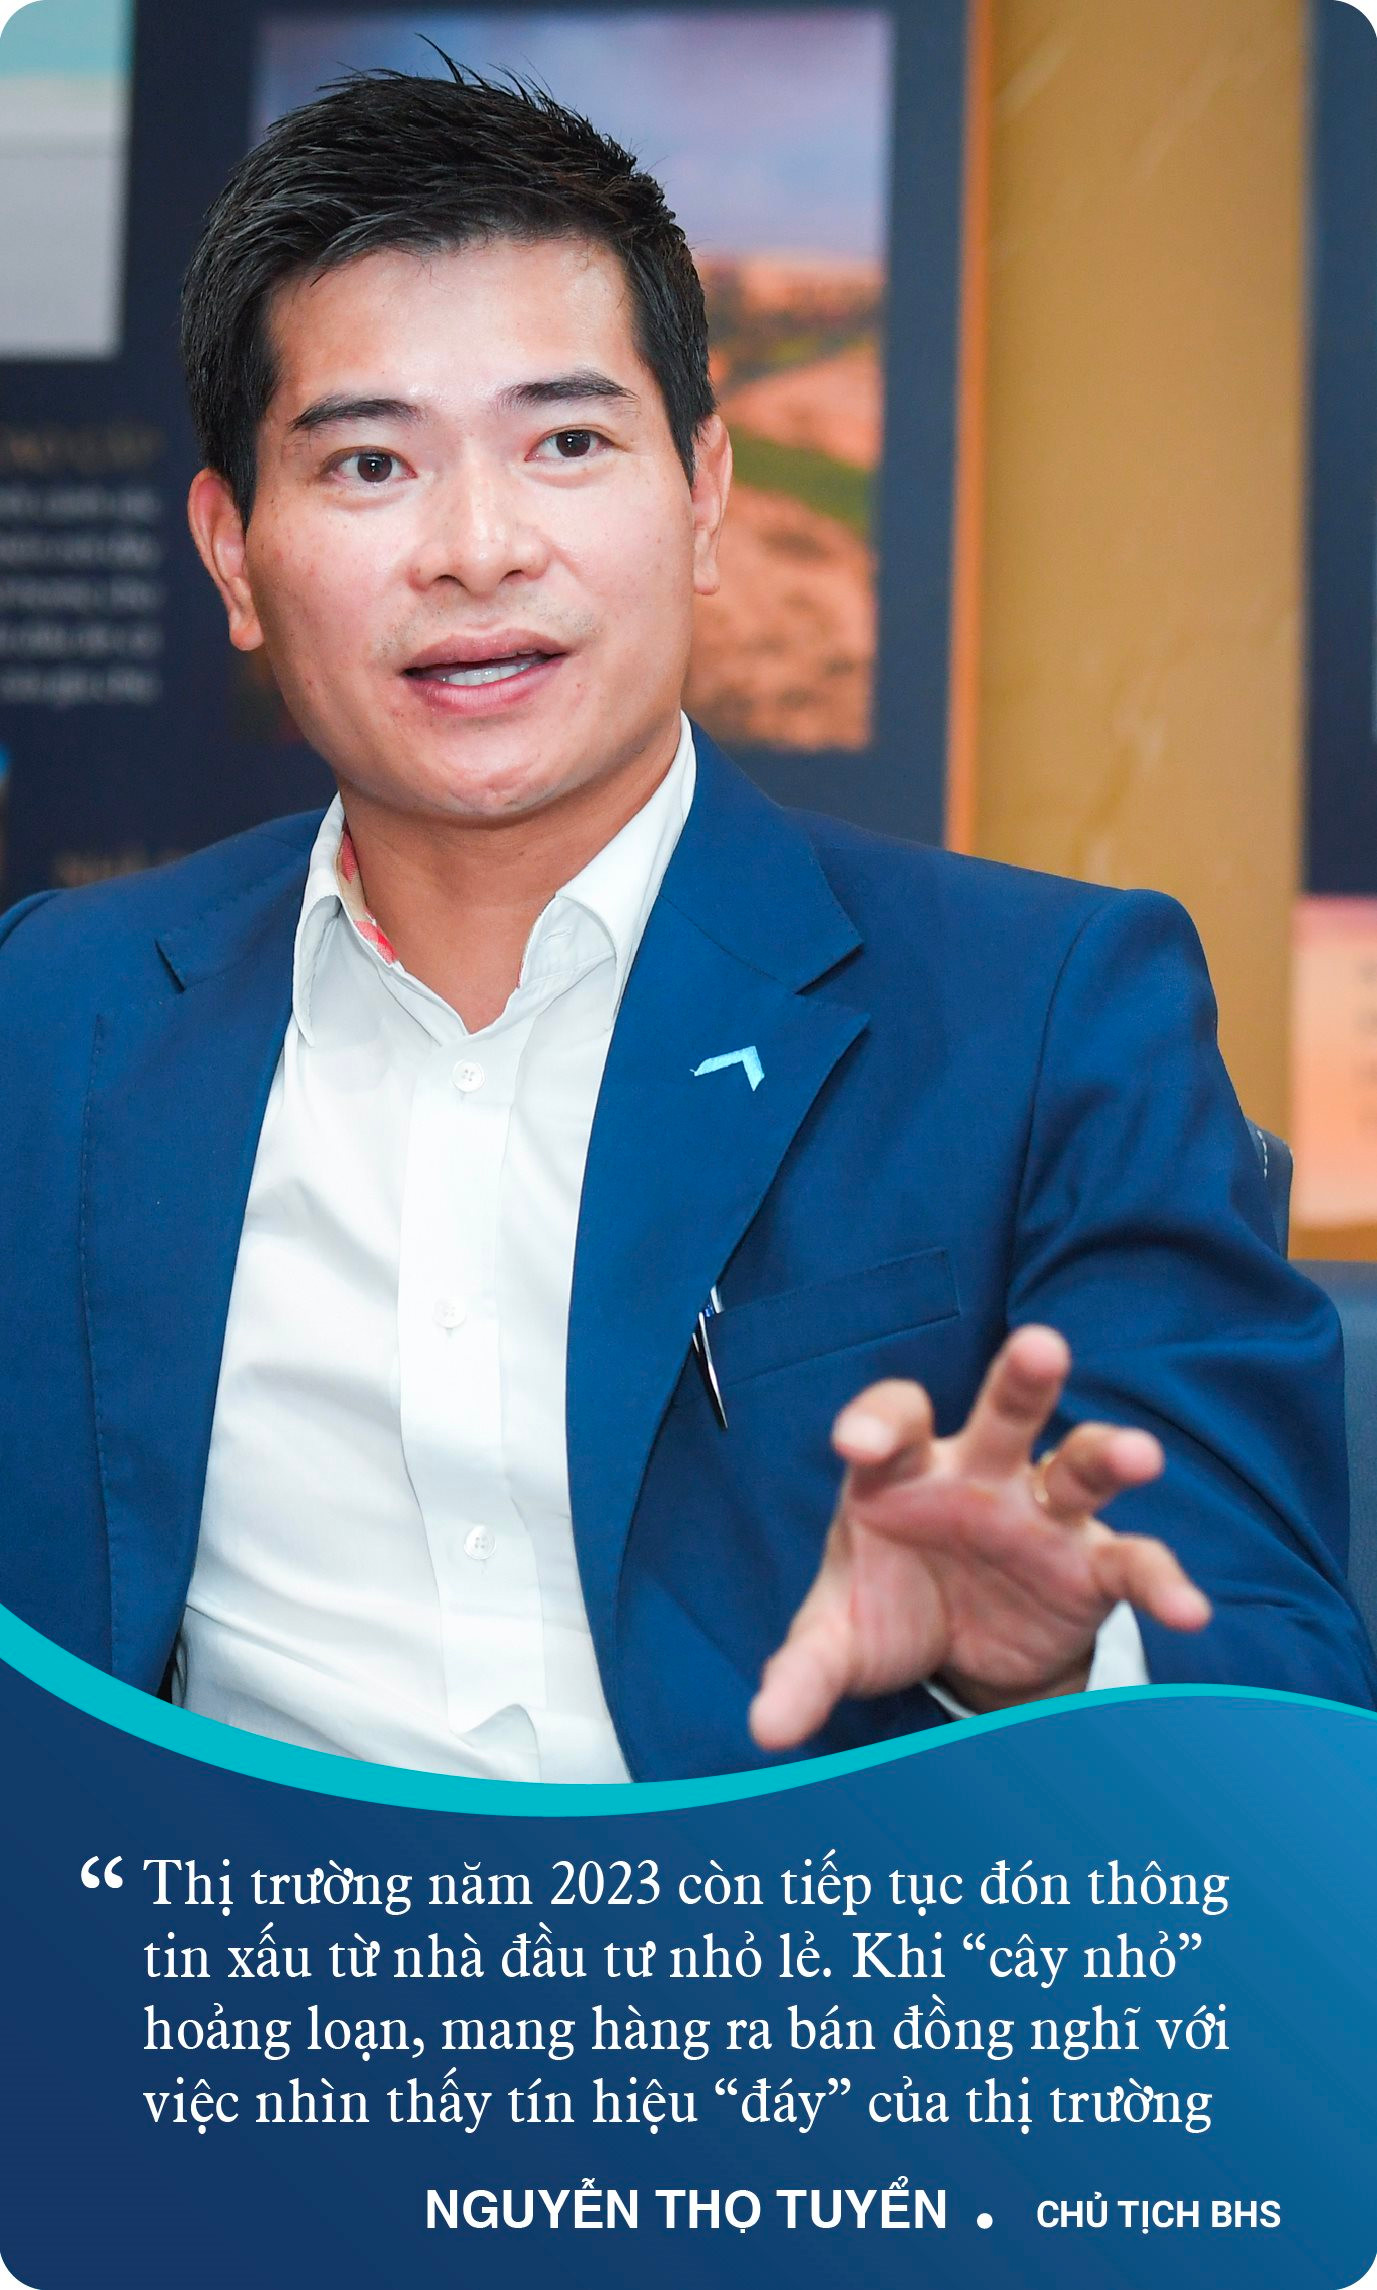 Chủ tịch BHS Nguyễn Thọ Tuyển: Sau cơn bão, cần chuẩn bị “bát cháo hành” hồi sức cho thị trường bất động sản - Ảnh 5.